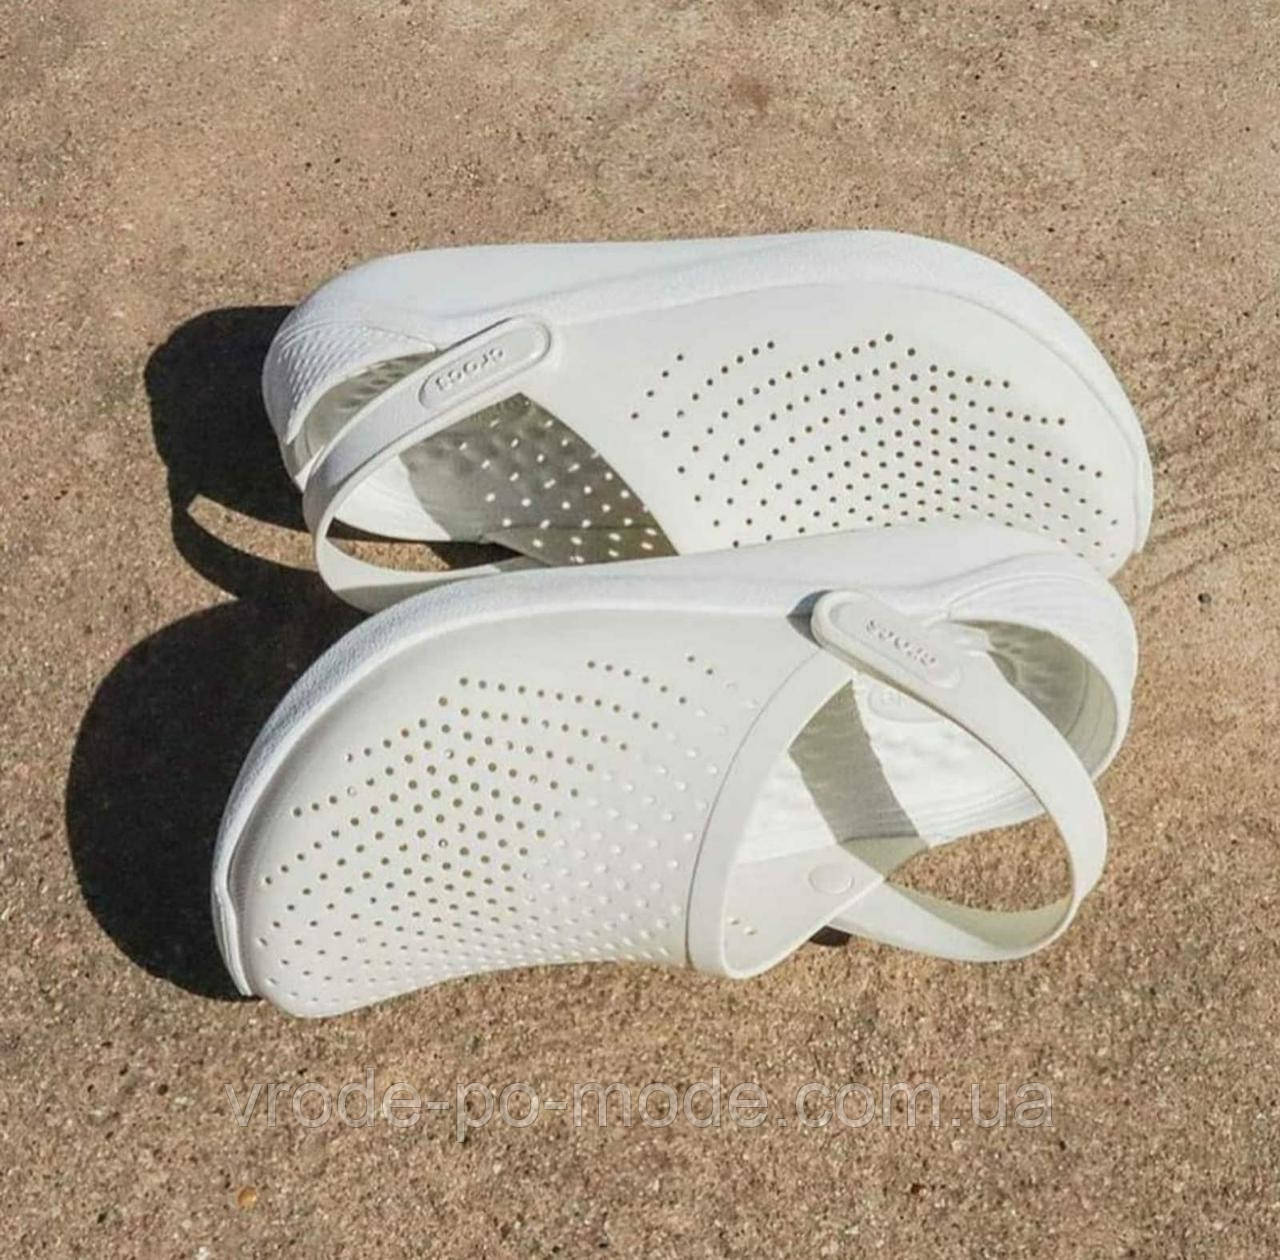 Чоловічі сандалі медичні крокси білі, сабо Crocs LiteRide оригінал